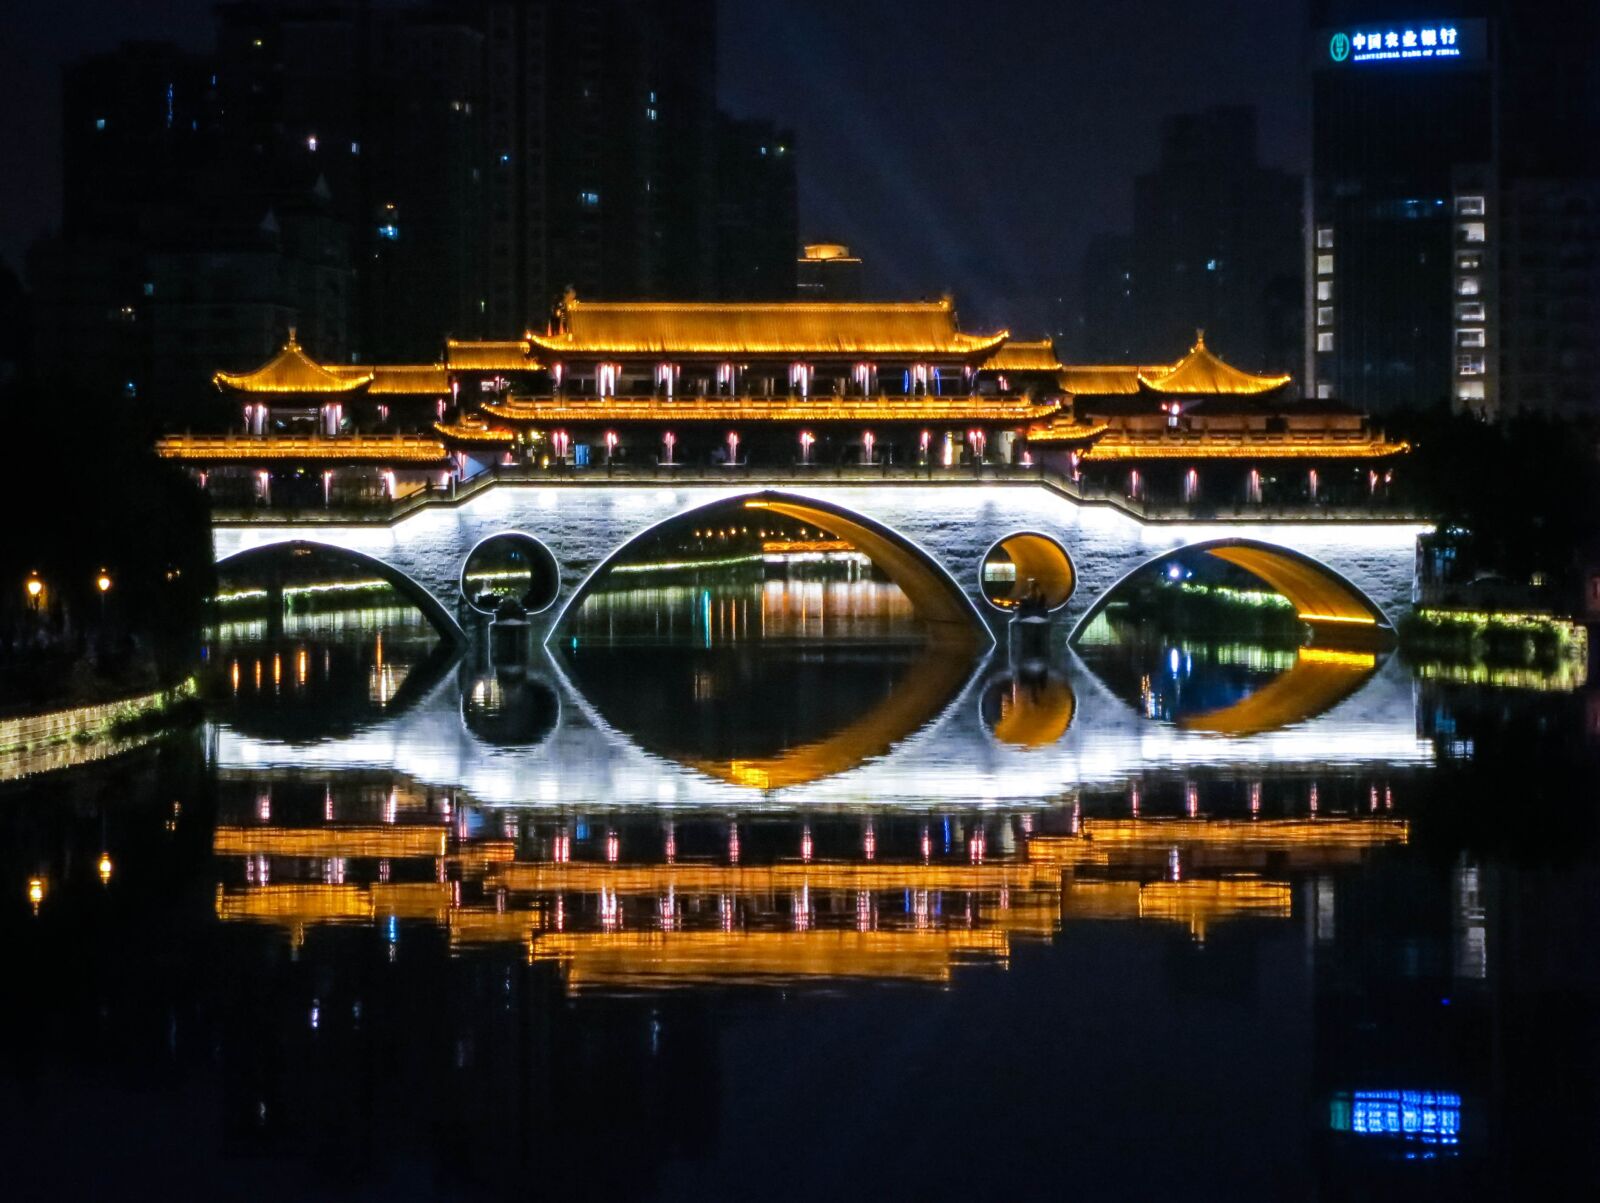 Canon PowerShot S100 sample photo. Anshun bridge, chengdu, china photography